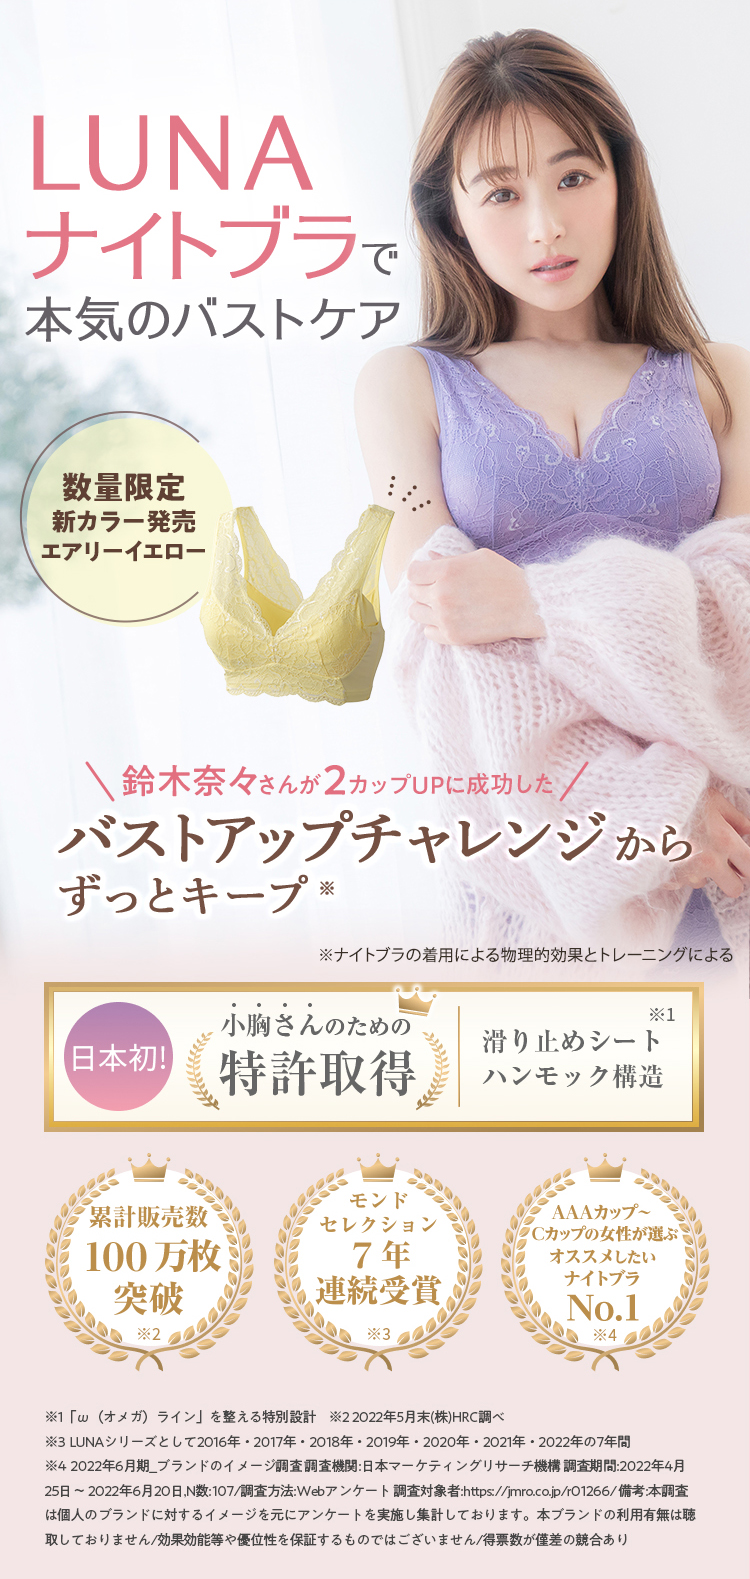 私はLUNAで小胸さん卒業、目指します。日本初！小胸さんのための特許取得